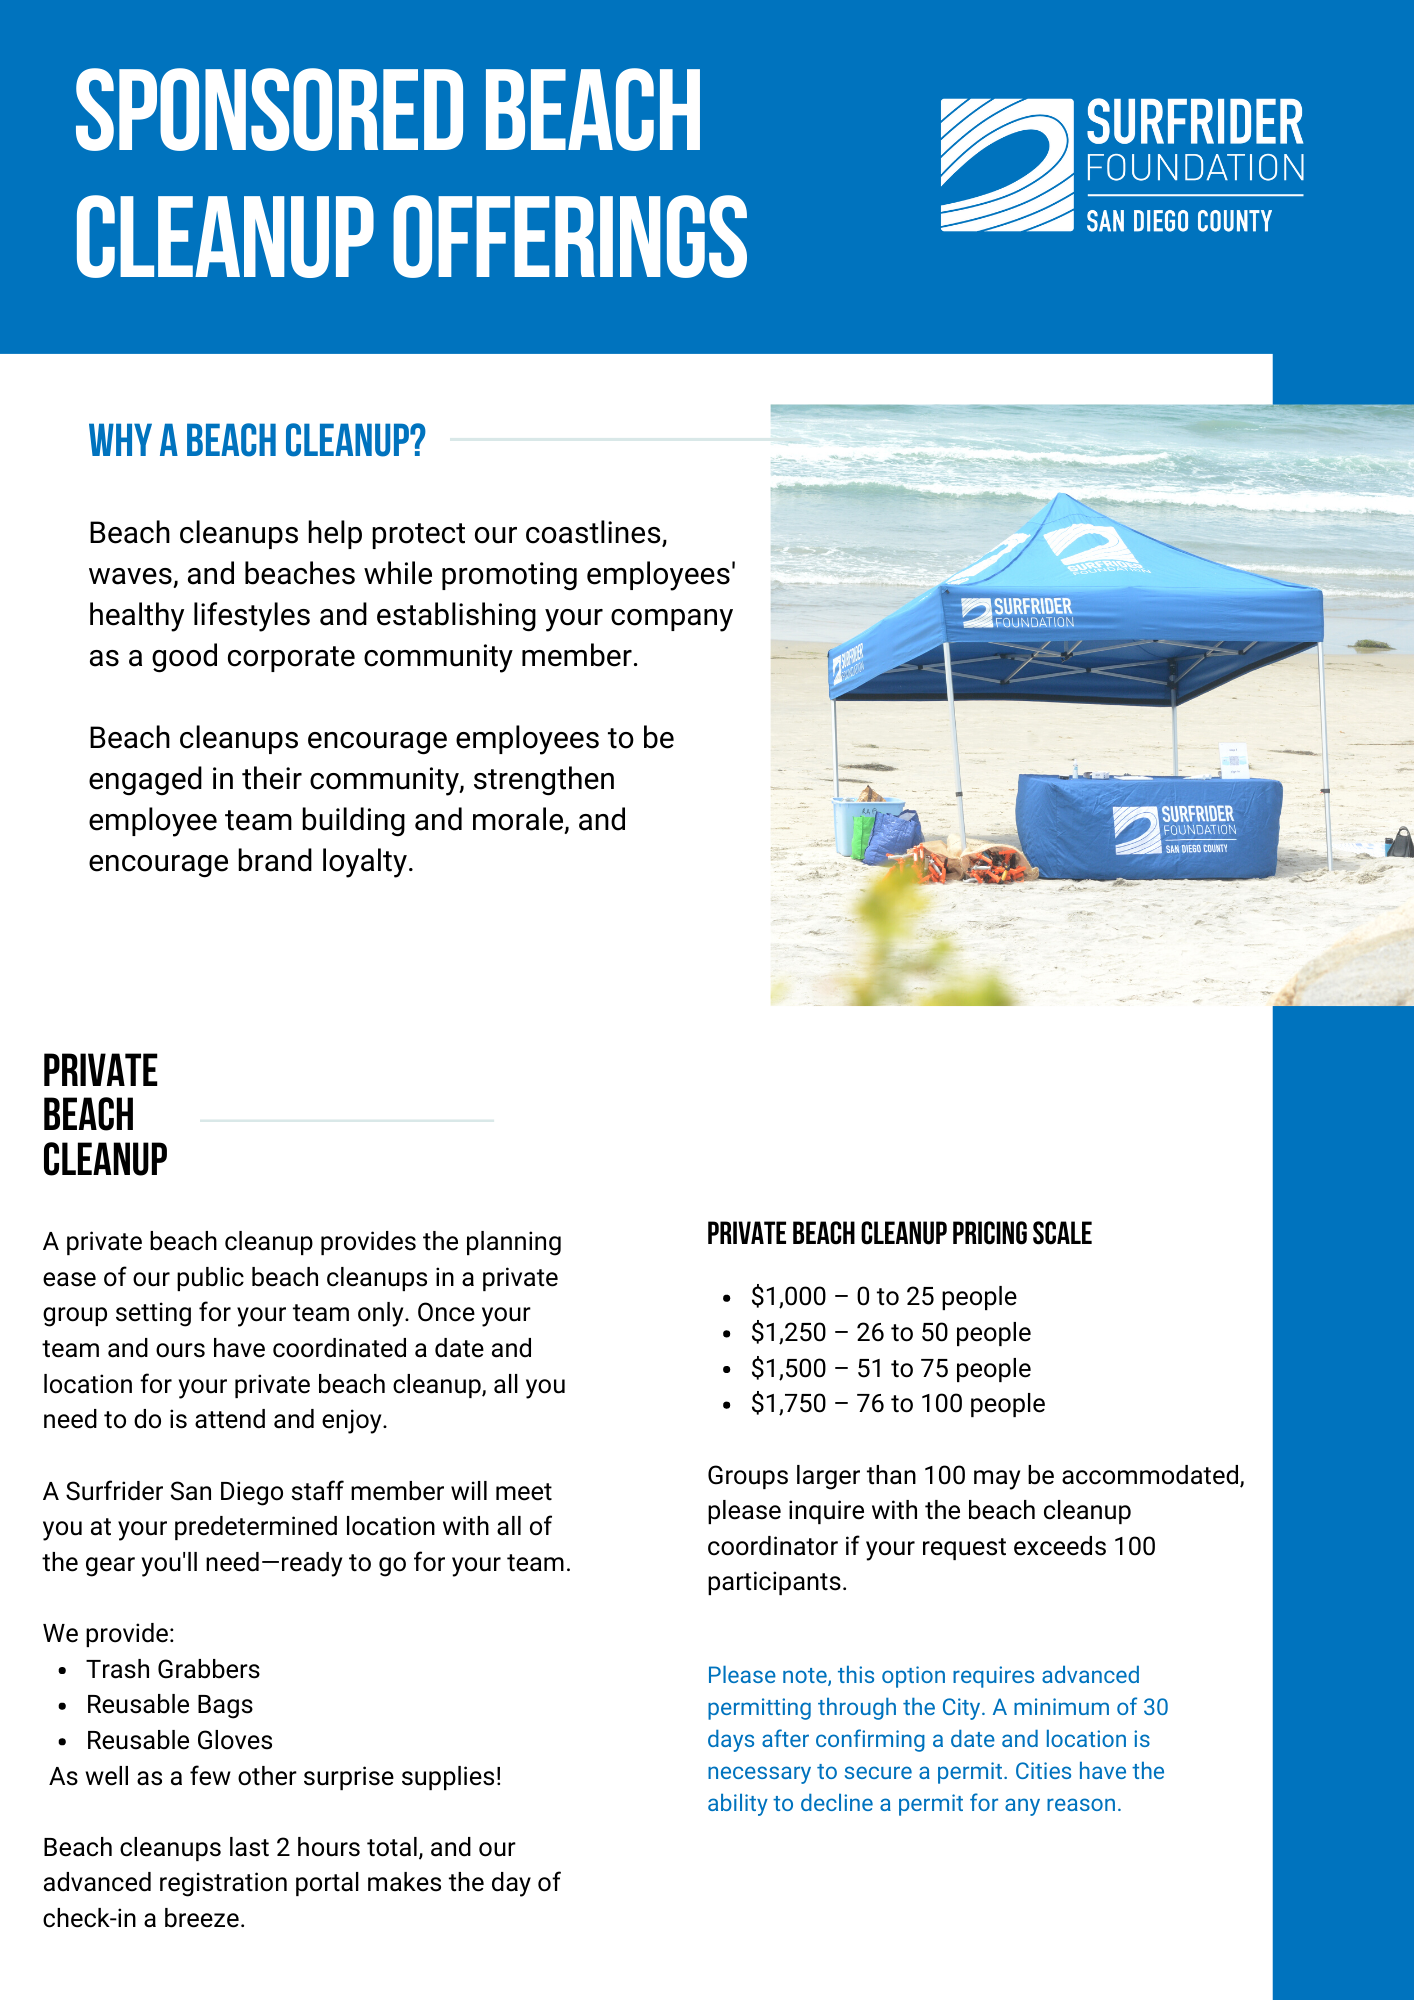 Surfrider San Diego sponsored Beach Cleanups